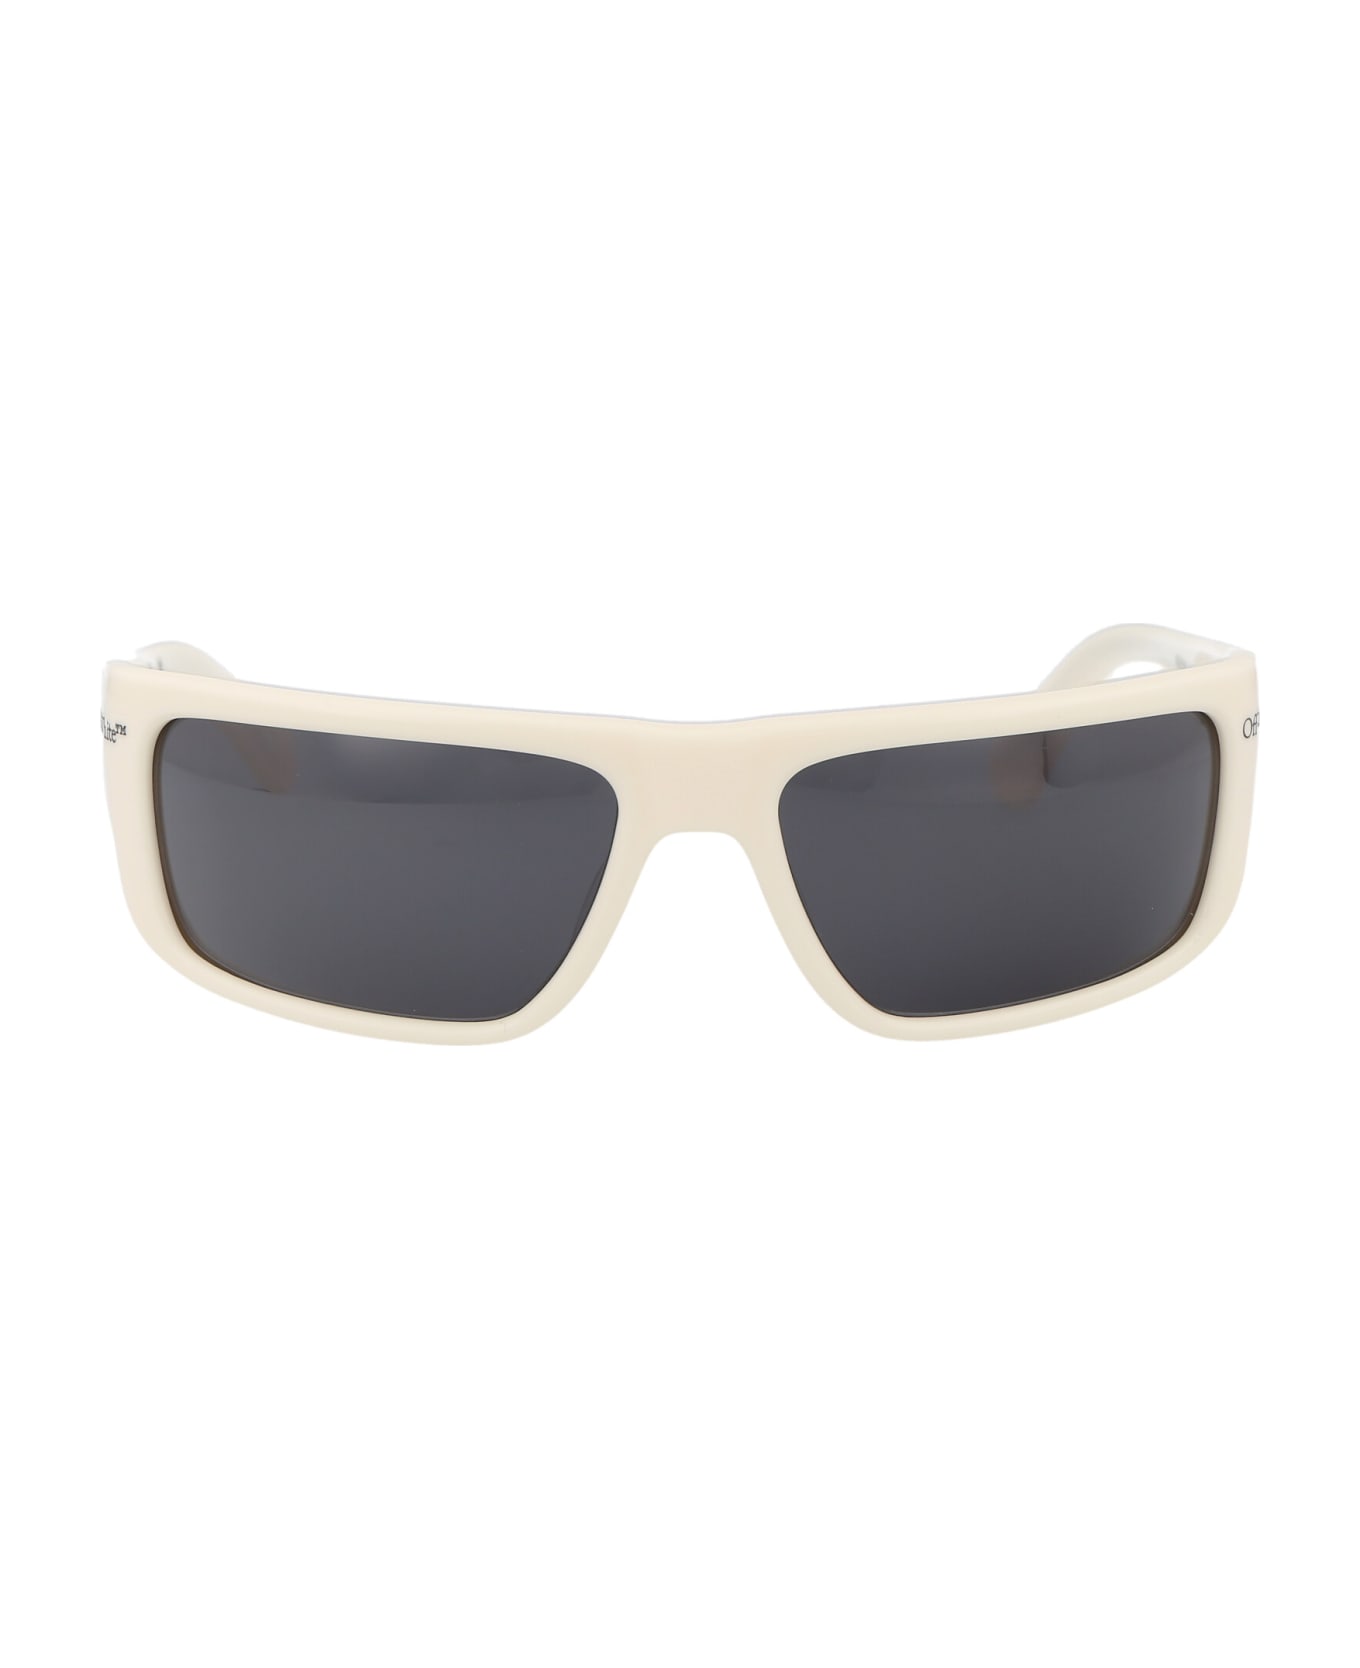 Off-White Bologna Sunglasses - 0107 WHITE